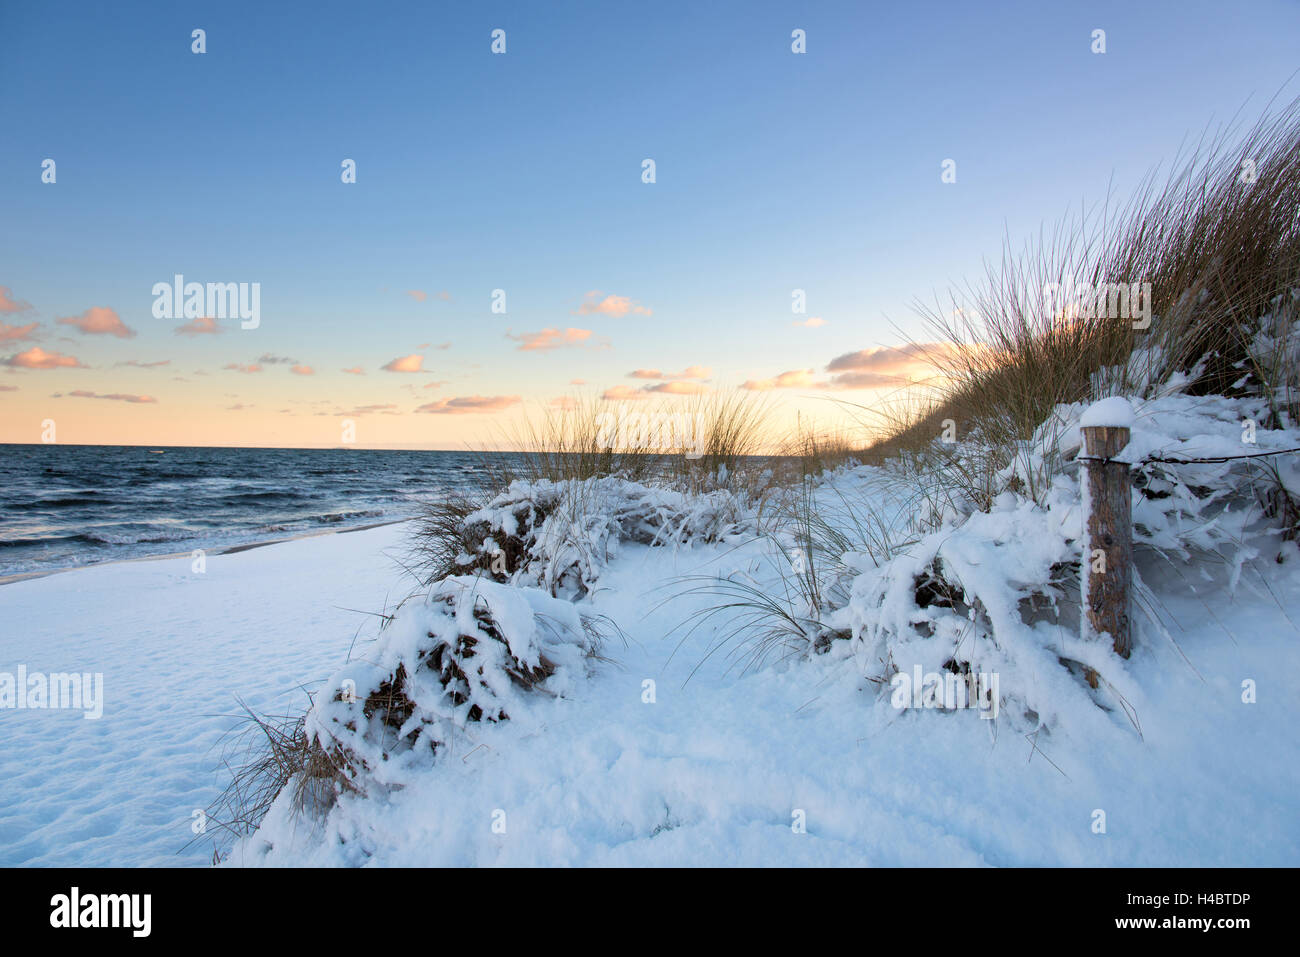 Lever du soleil, la plage, l'hiver, la neige, la mer Baltique, Darss, Zingst, Allemagne Banque D'Images